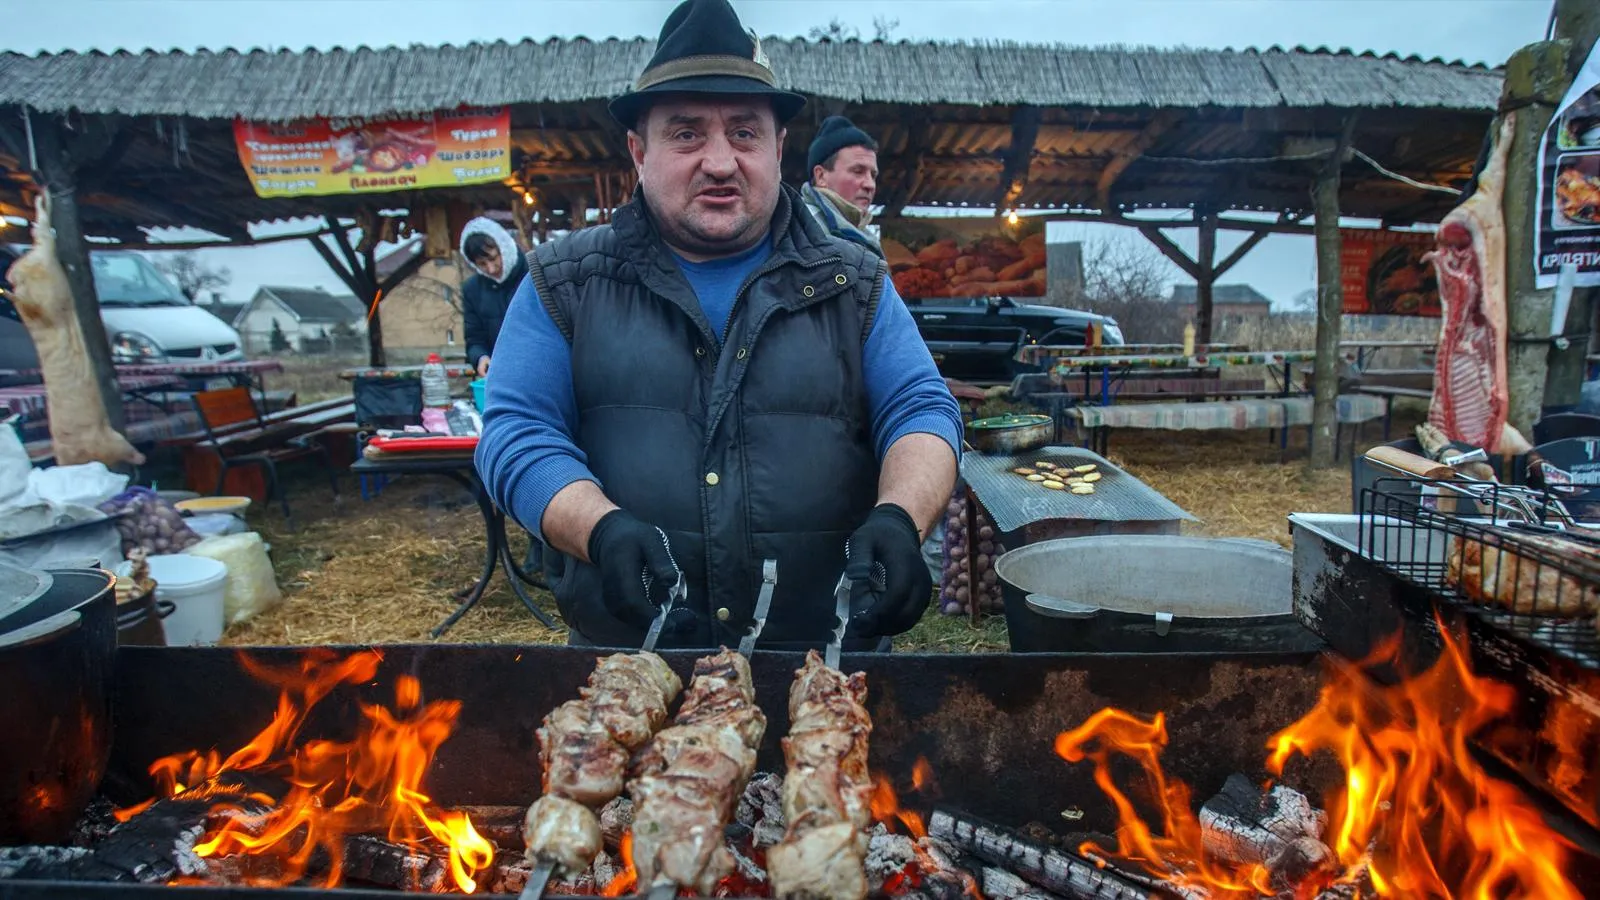 Венгр из села Хеча Закарпатской области участвует в фестивале мясников, 27 января 2018 года. Sergey Hudak